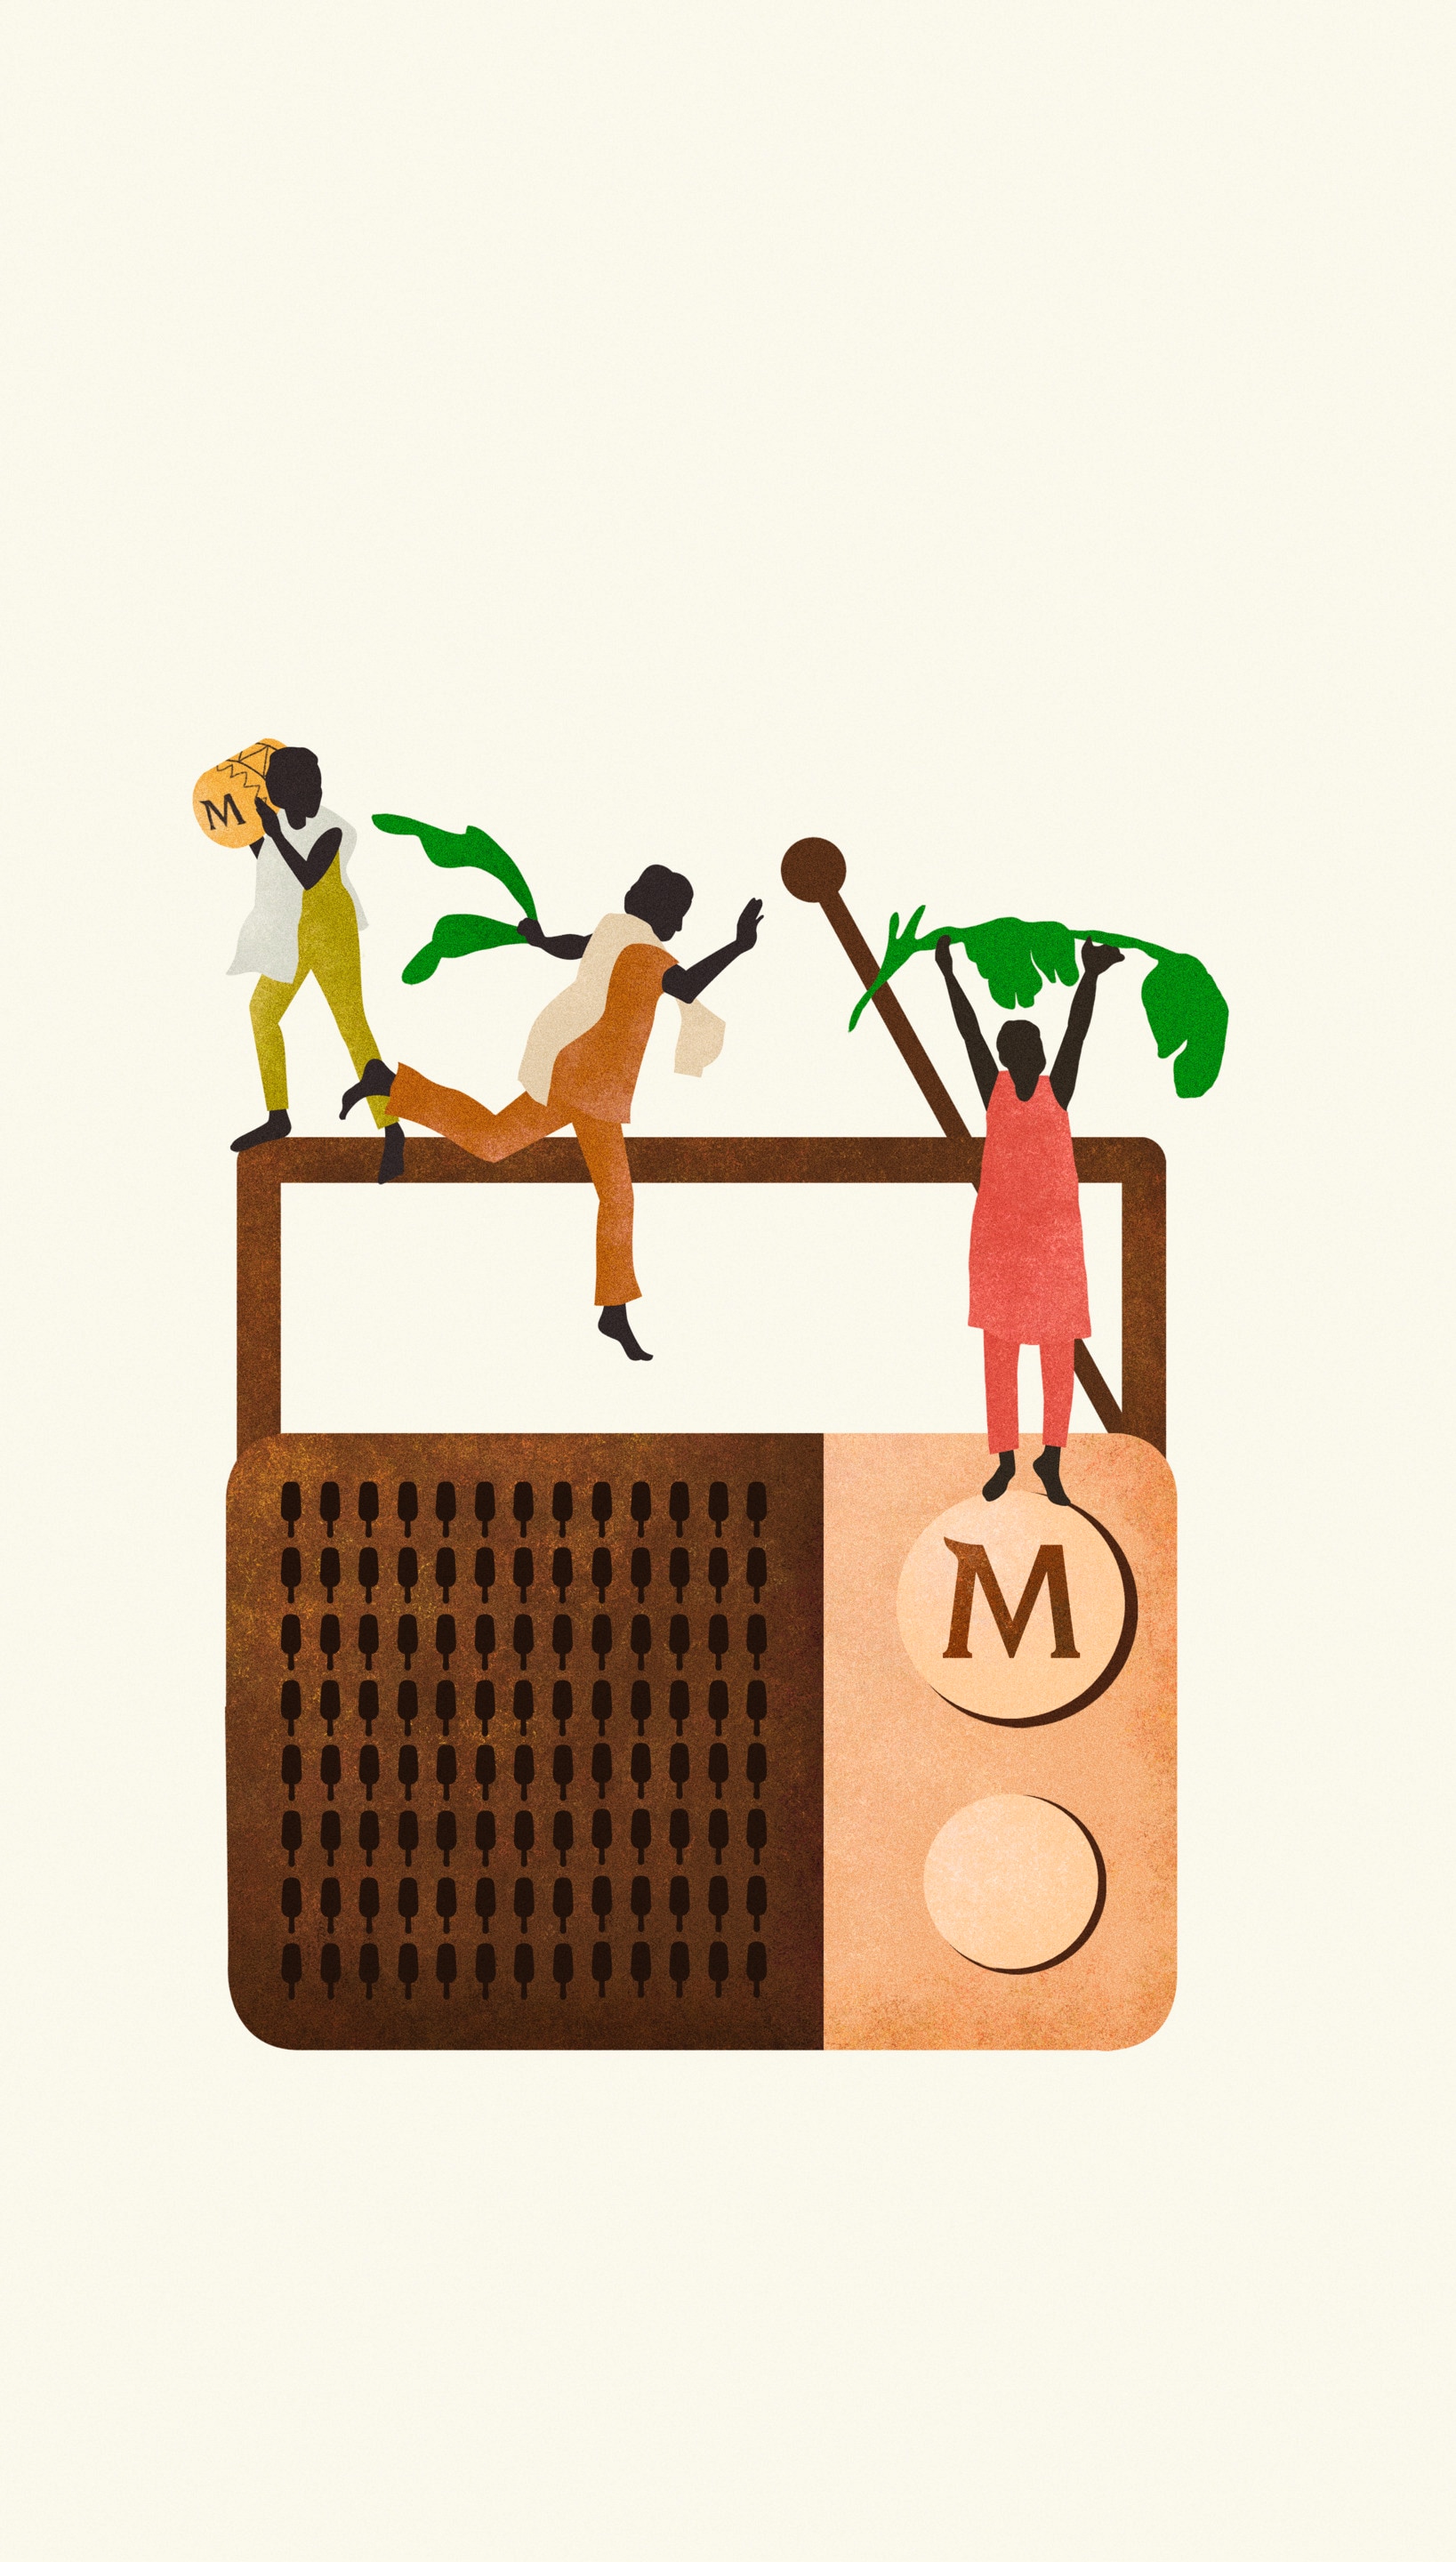 Illustration eines grossen, alten Radios mit Magnum Logo, drei tanzenden Personen, die mit grünen Blättern interagieren